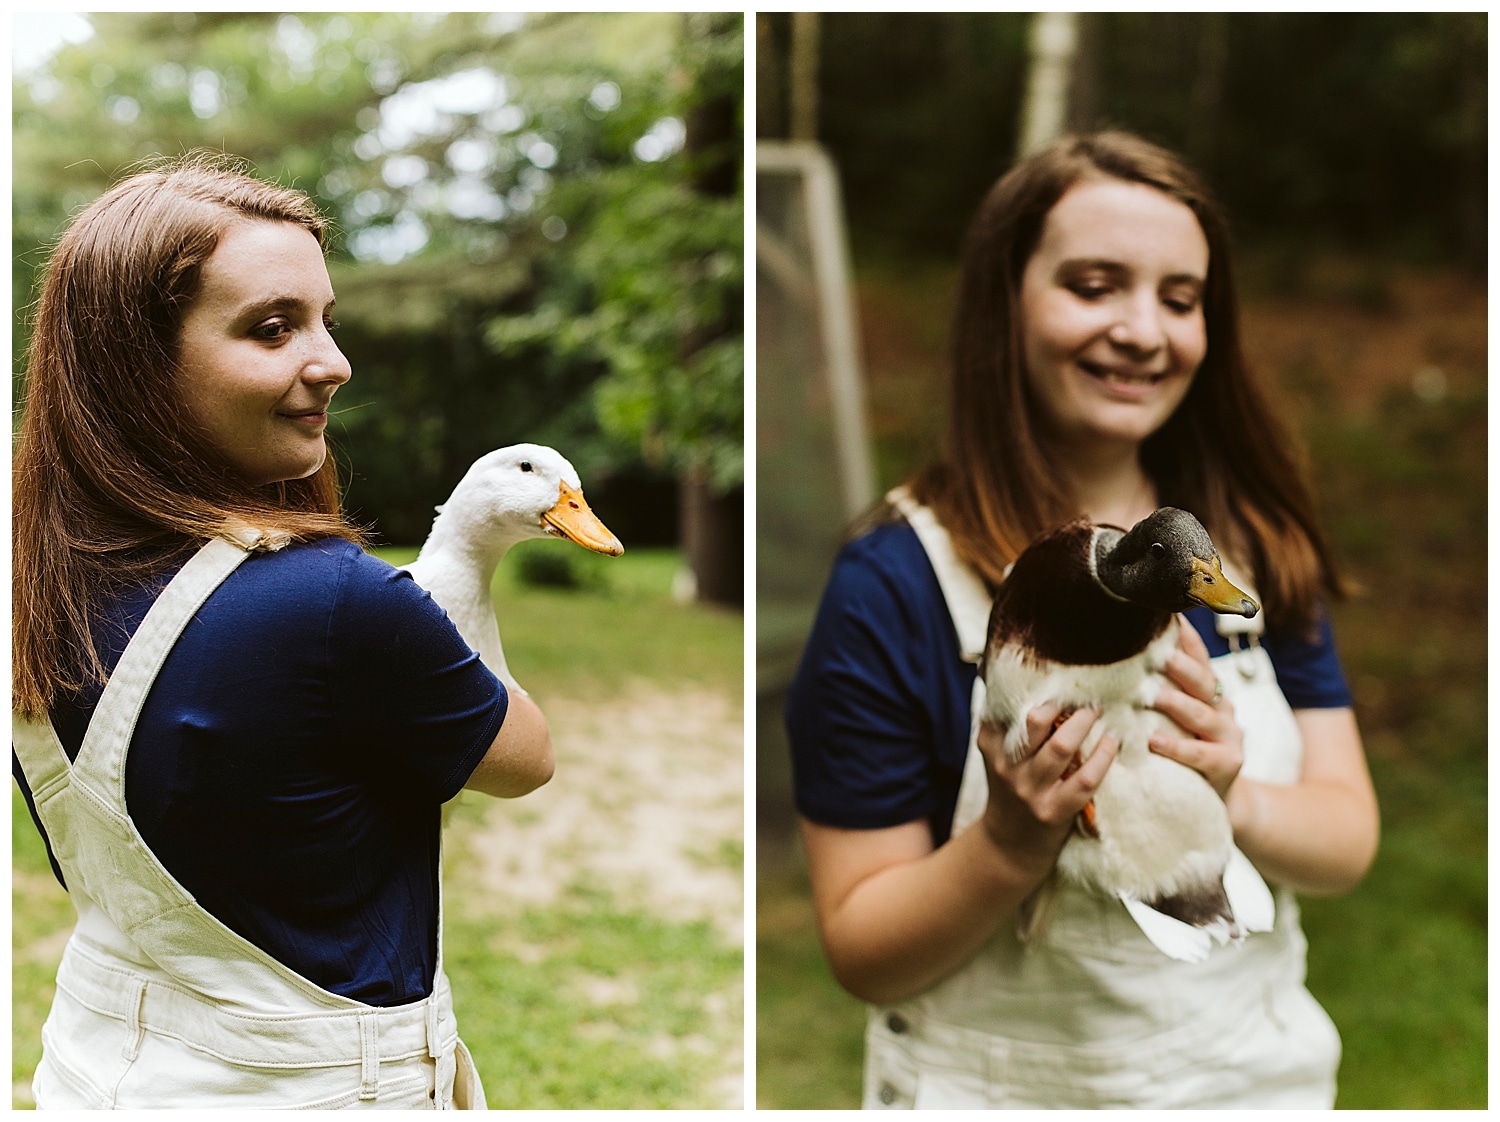 senior girl holding pet ducks